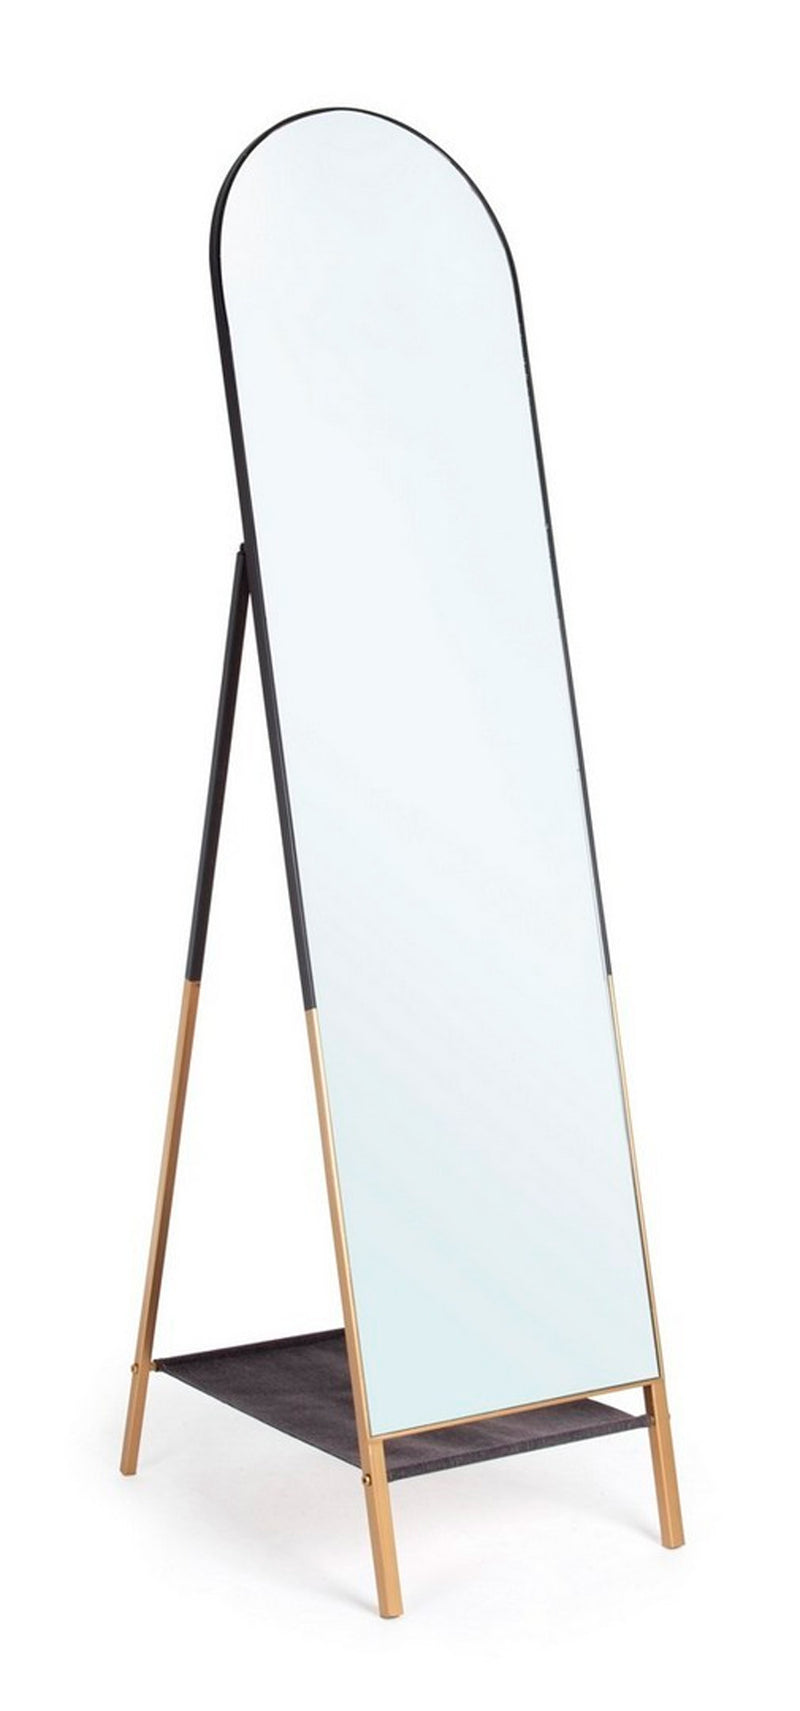 Specchio da terra design moderno cornice in acciaio colore nero e oro cm 42x68x170h